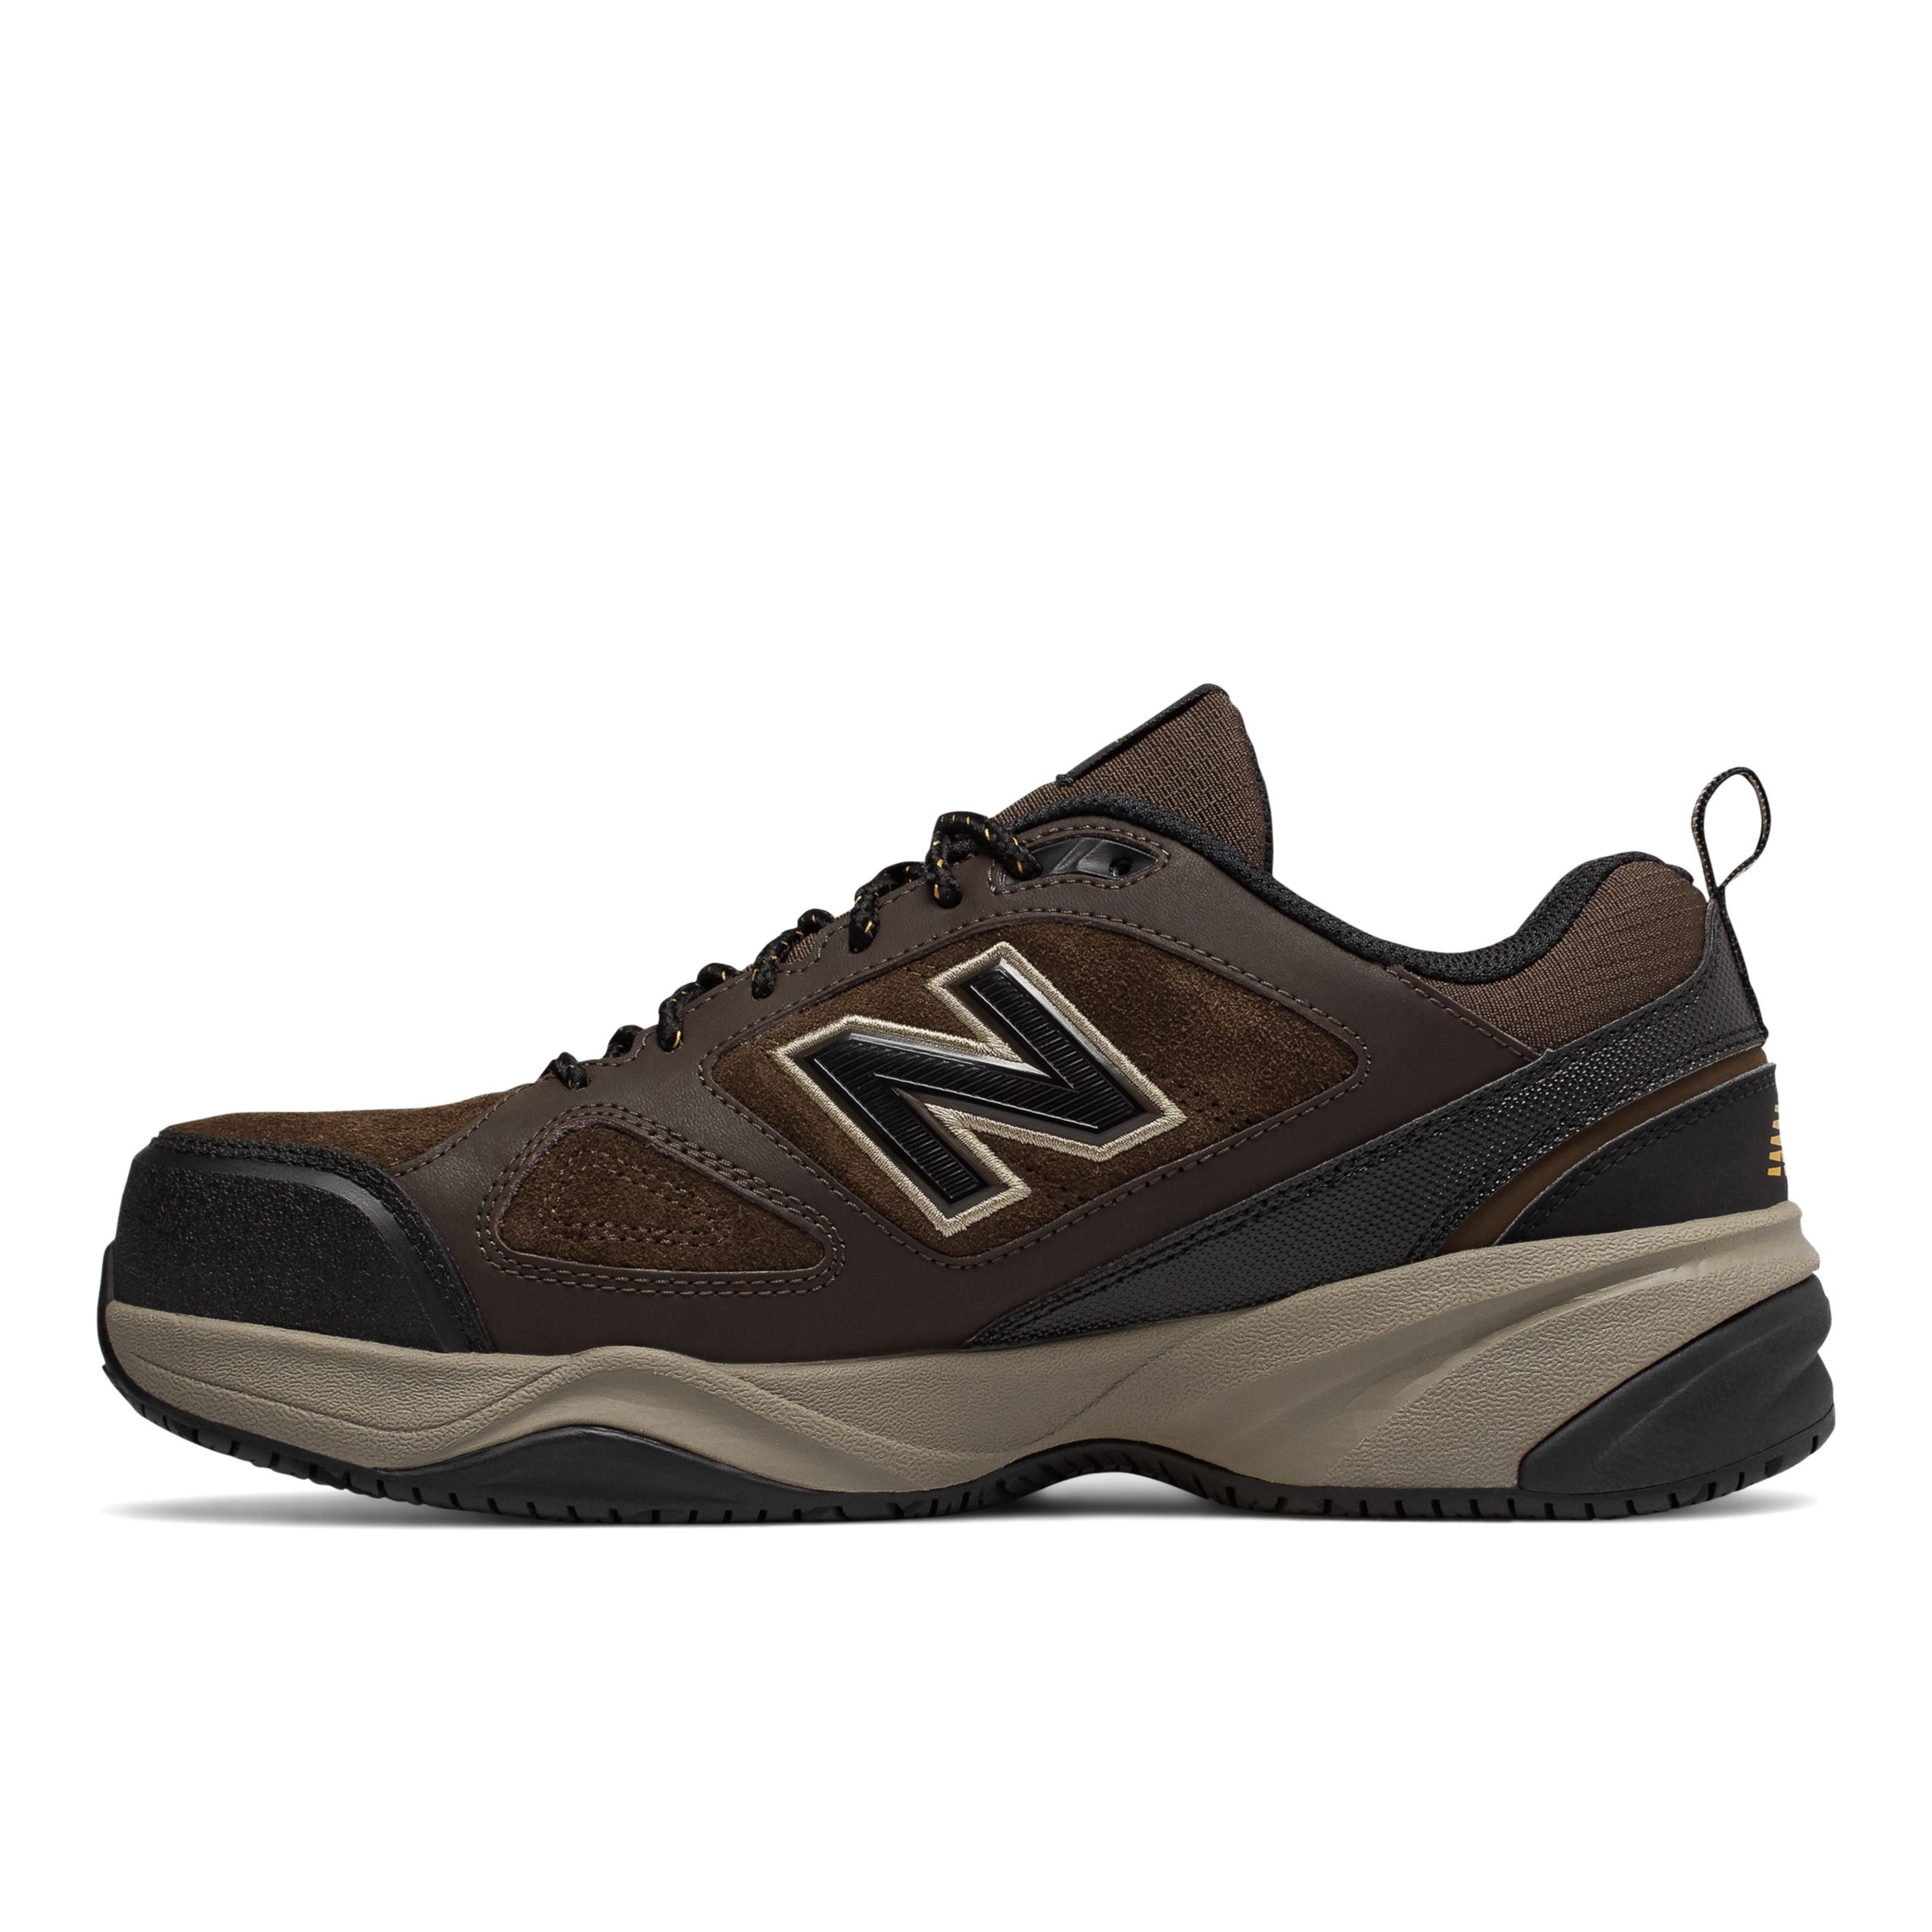 new balance men's mid627v2 work shoe